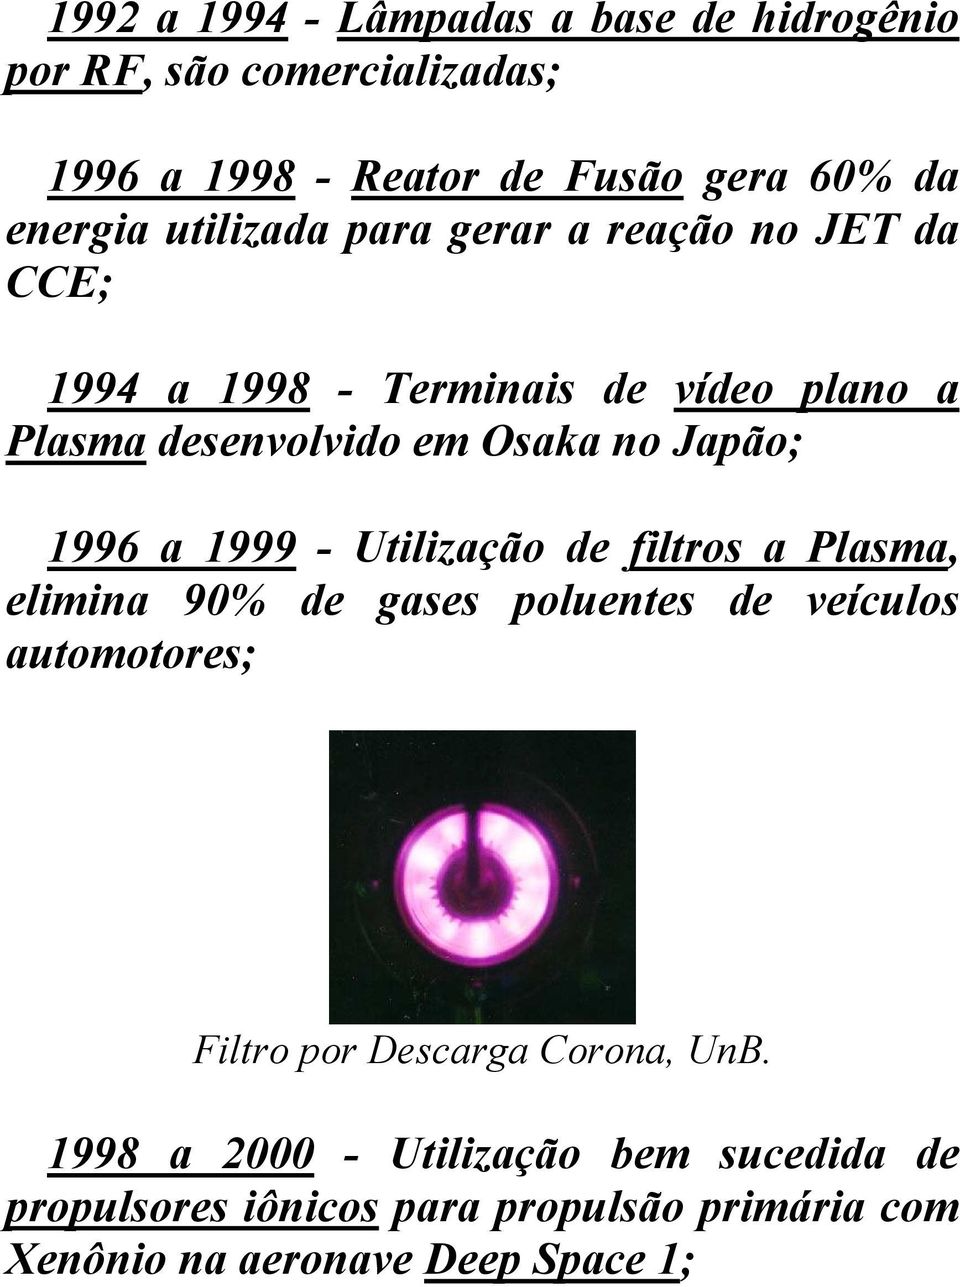 1996 a 1999 - Utilização de filtros a Plasma, elimina 90% de gases poluentes de veículos automotores; Filtro por Descarga